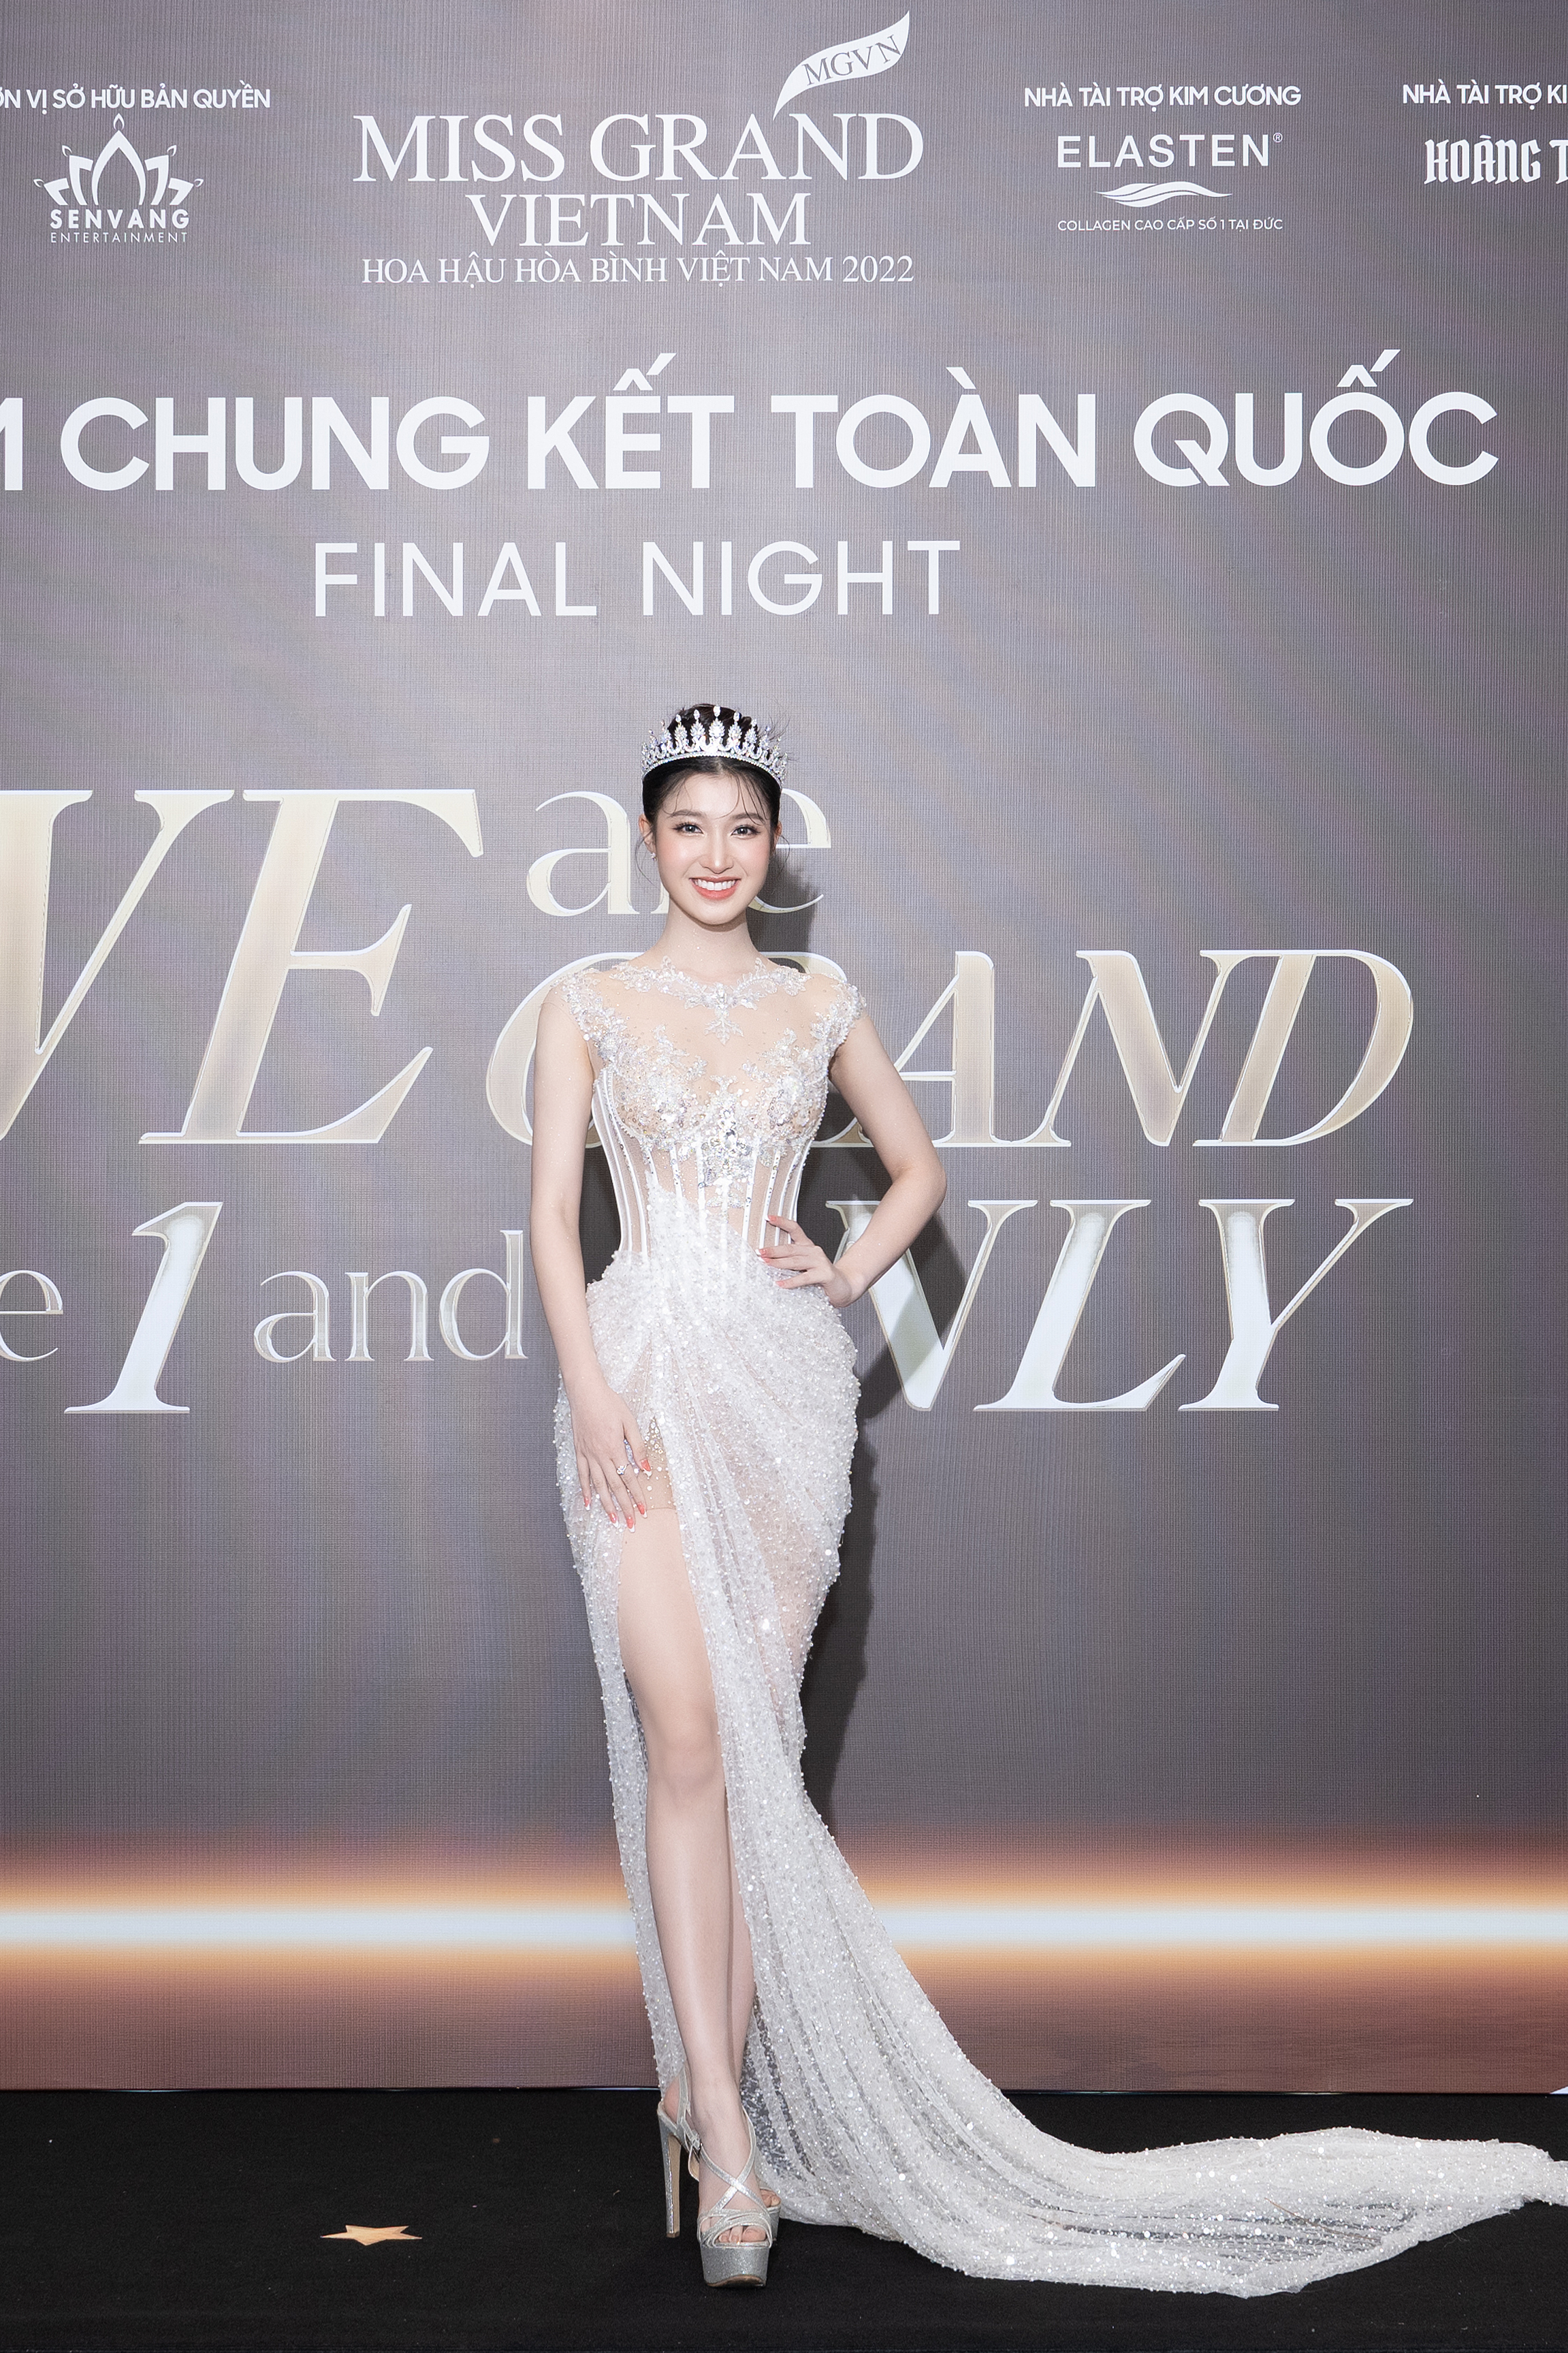 Thùy Tiên, Phương Nhi đội vương miện, rạng rỡ trên thảm đỏ chung kết Miss Grand Vietnam 2022-2